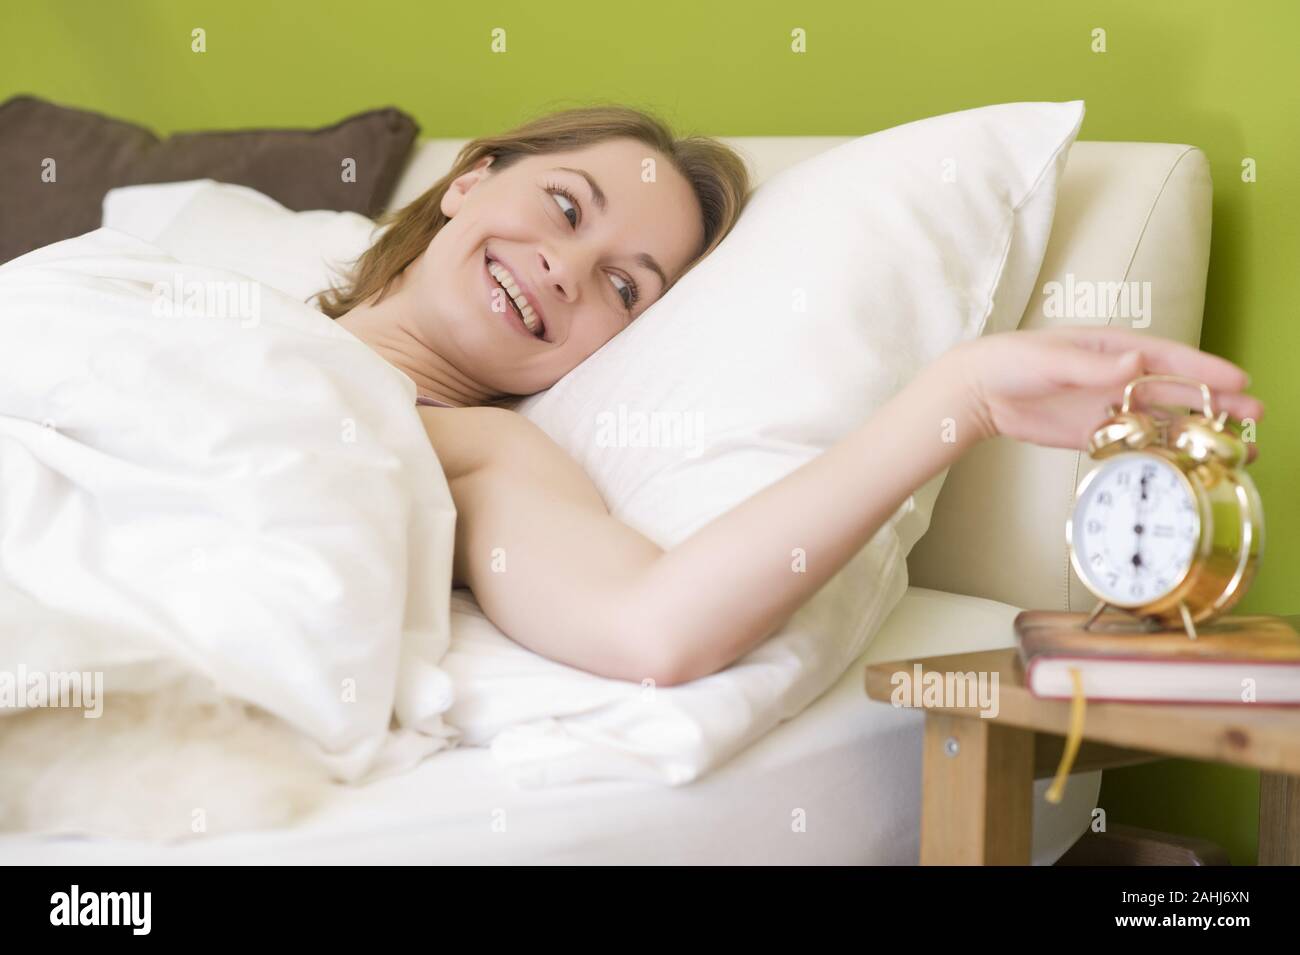 25 -30 jährige Frau schläft im Bett, zeigt ihre Füsse, signor:Sì Foto Stock